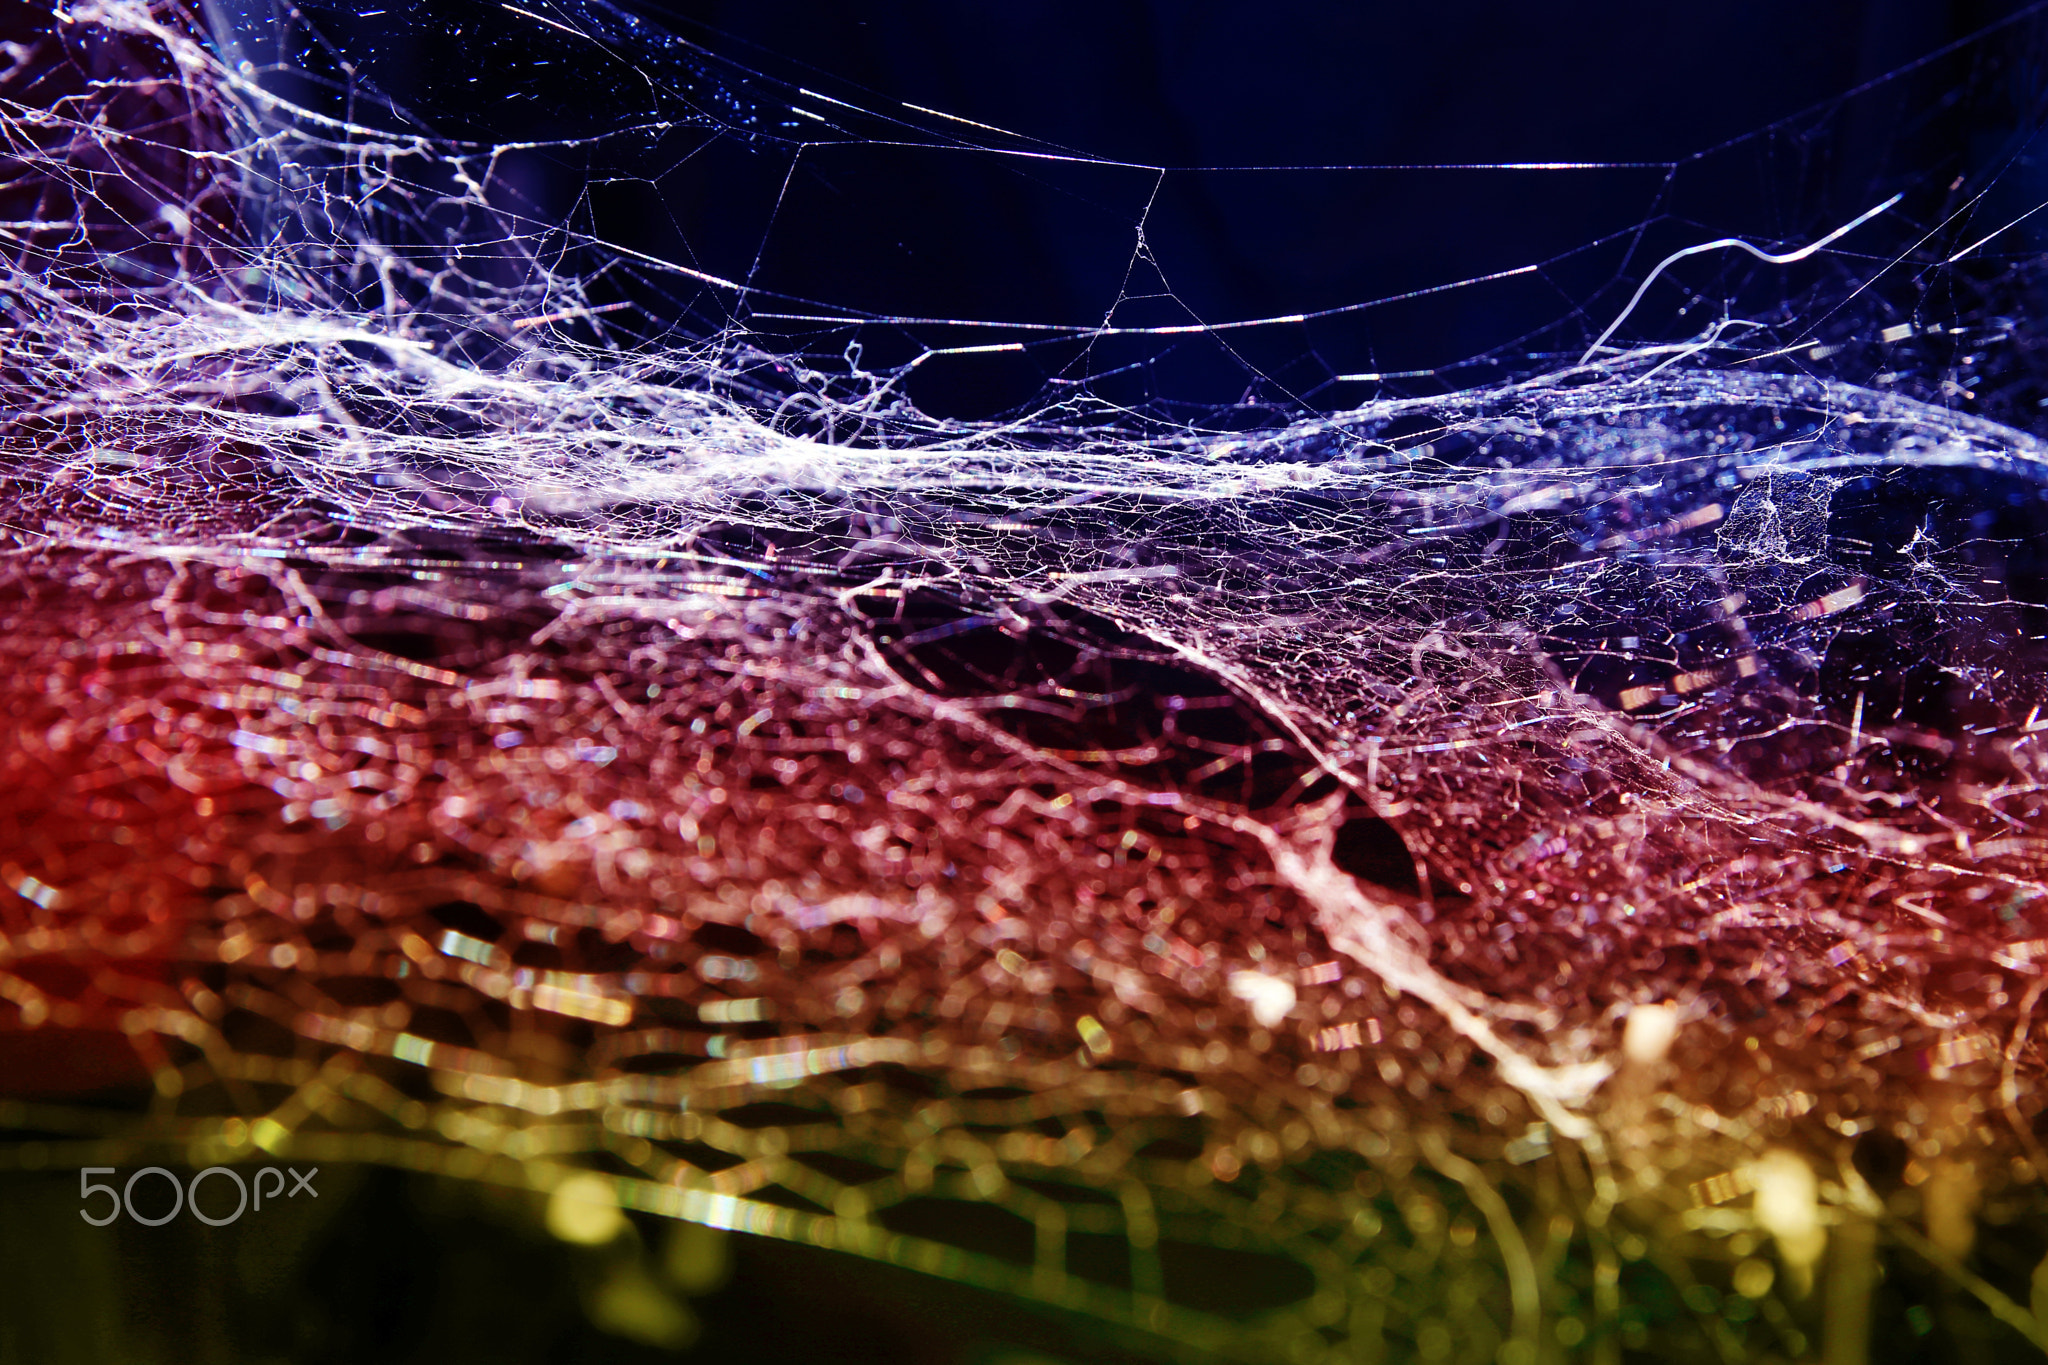 Sci fi cobweb texture background